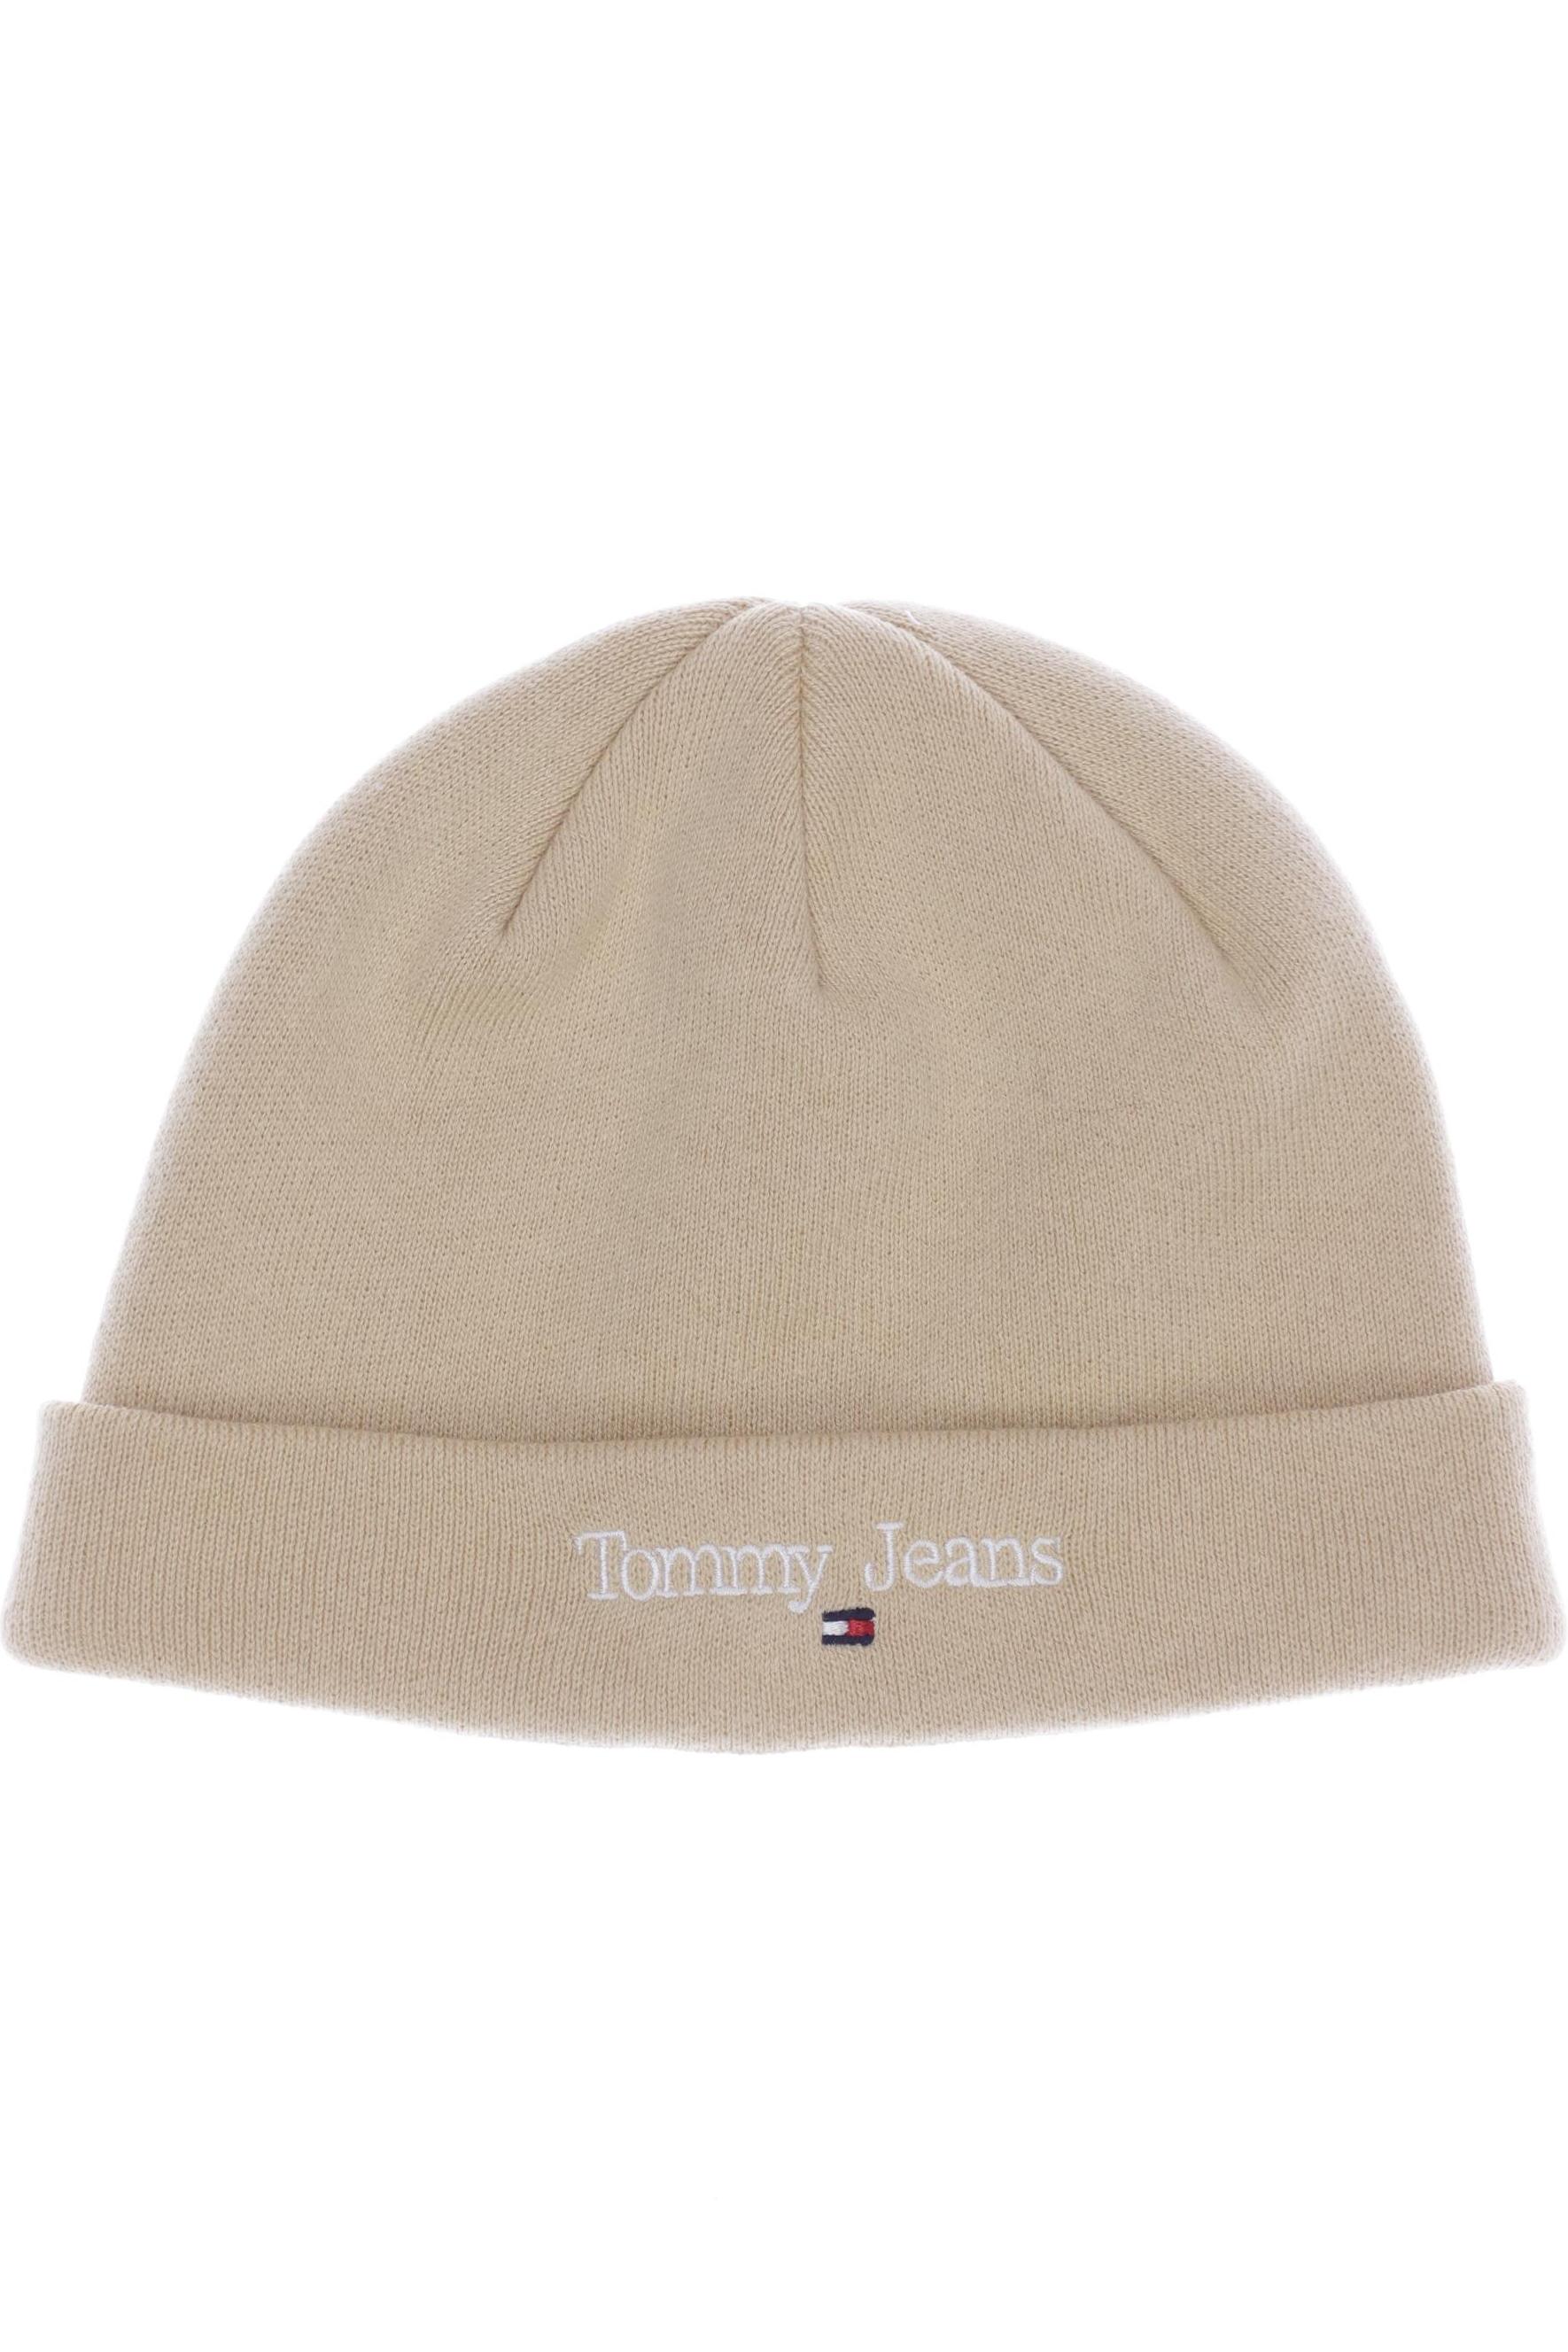 Tommy Jeans Damen Hut/Mütze, beige von Tommy Jeans